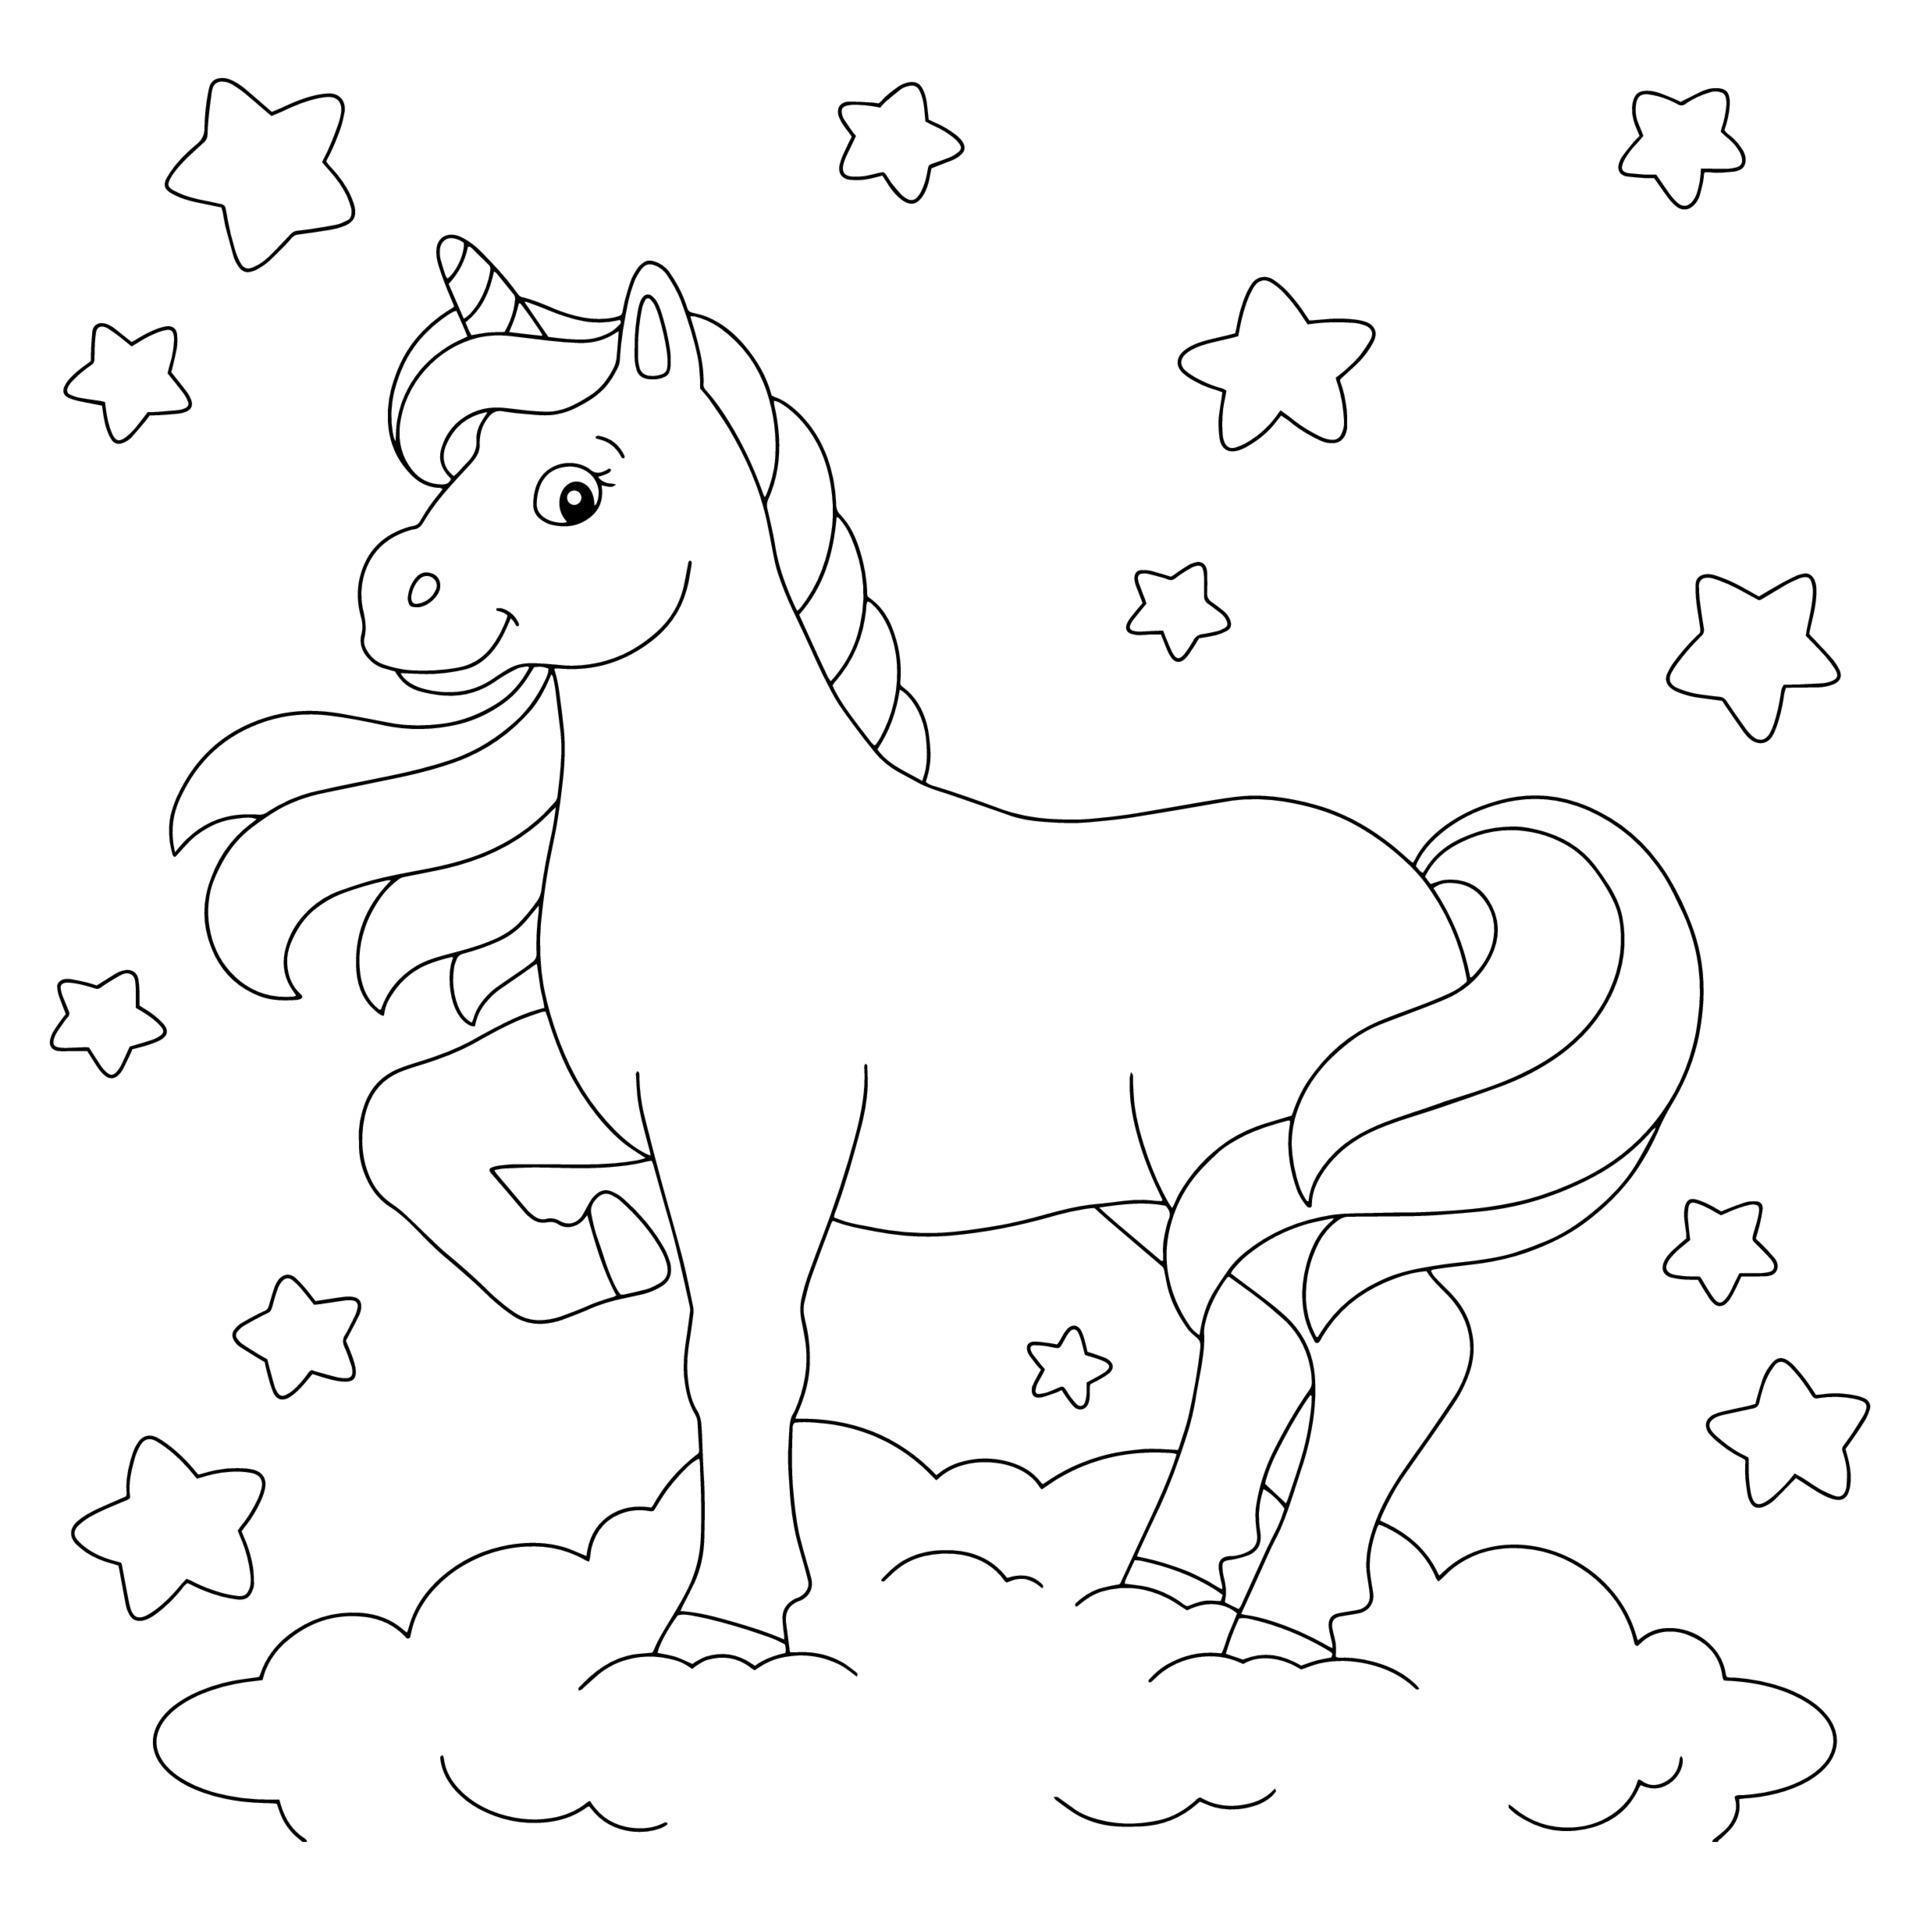 Shining unicorn watch coloring book